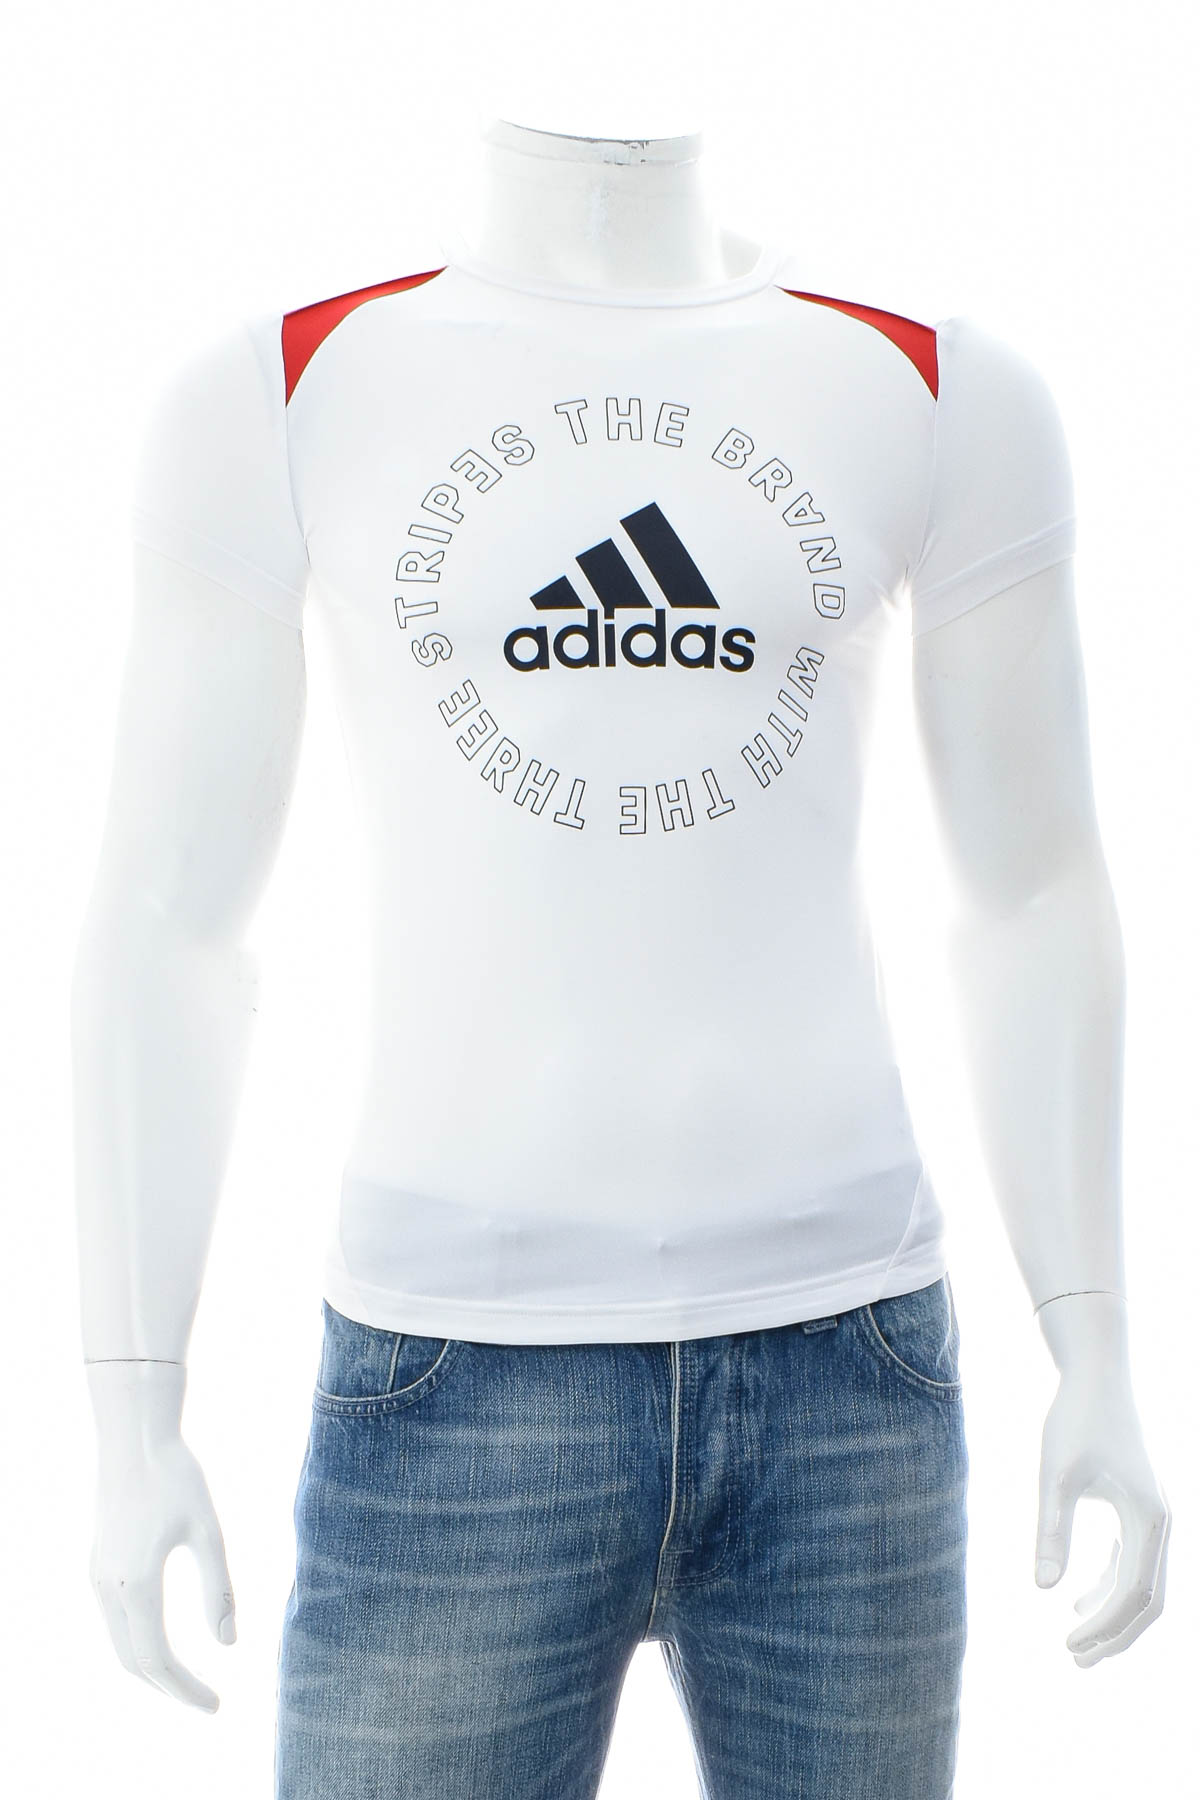 Tricou pentru băiat - Adidas - 0